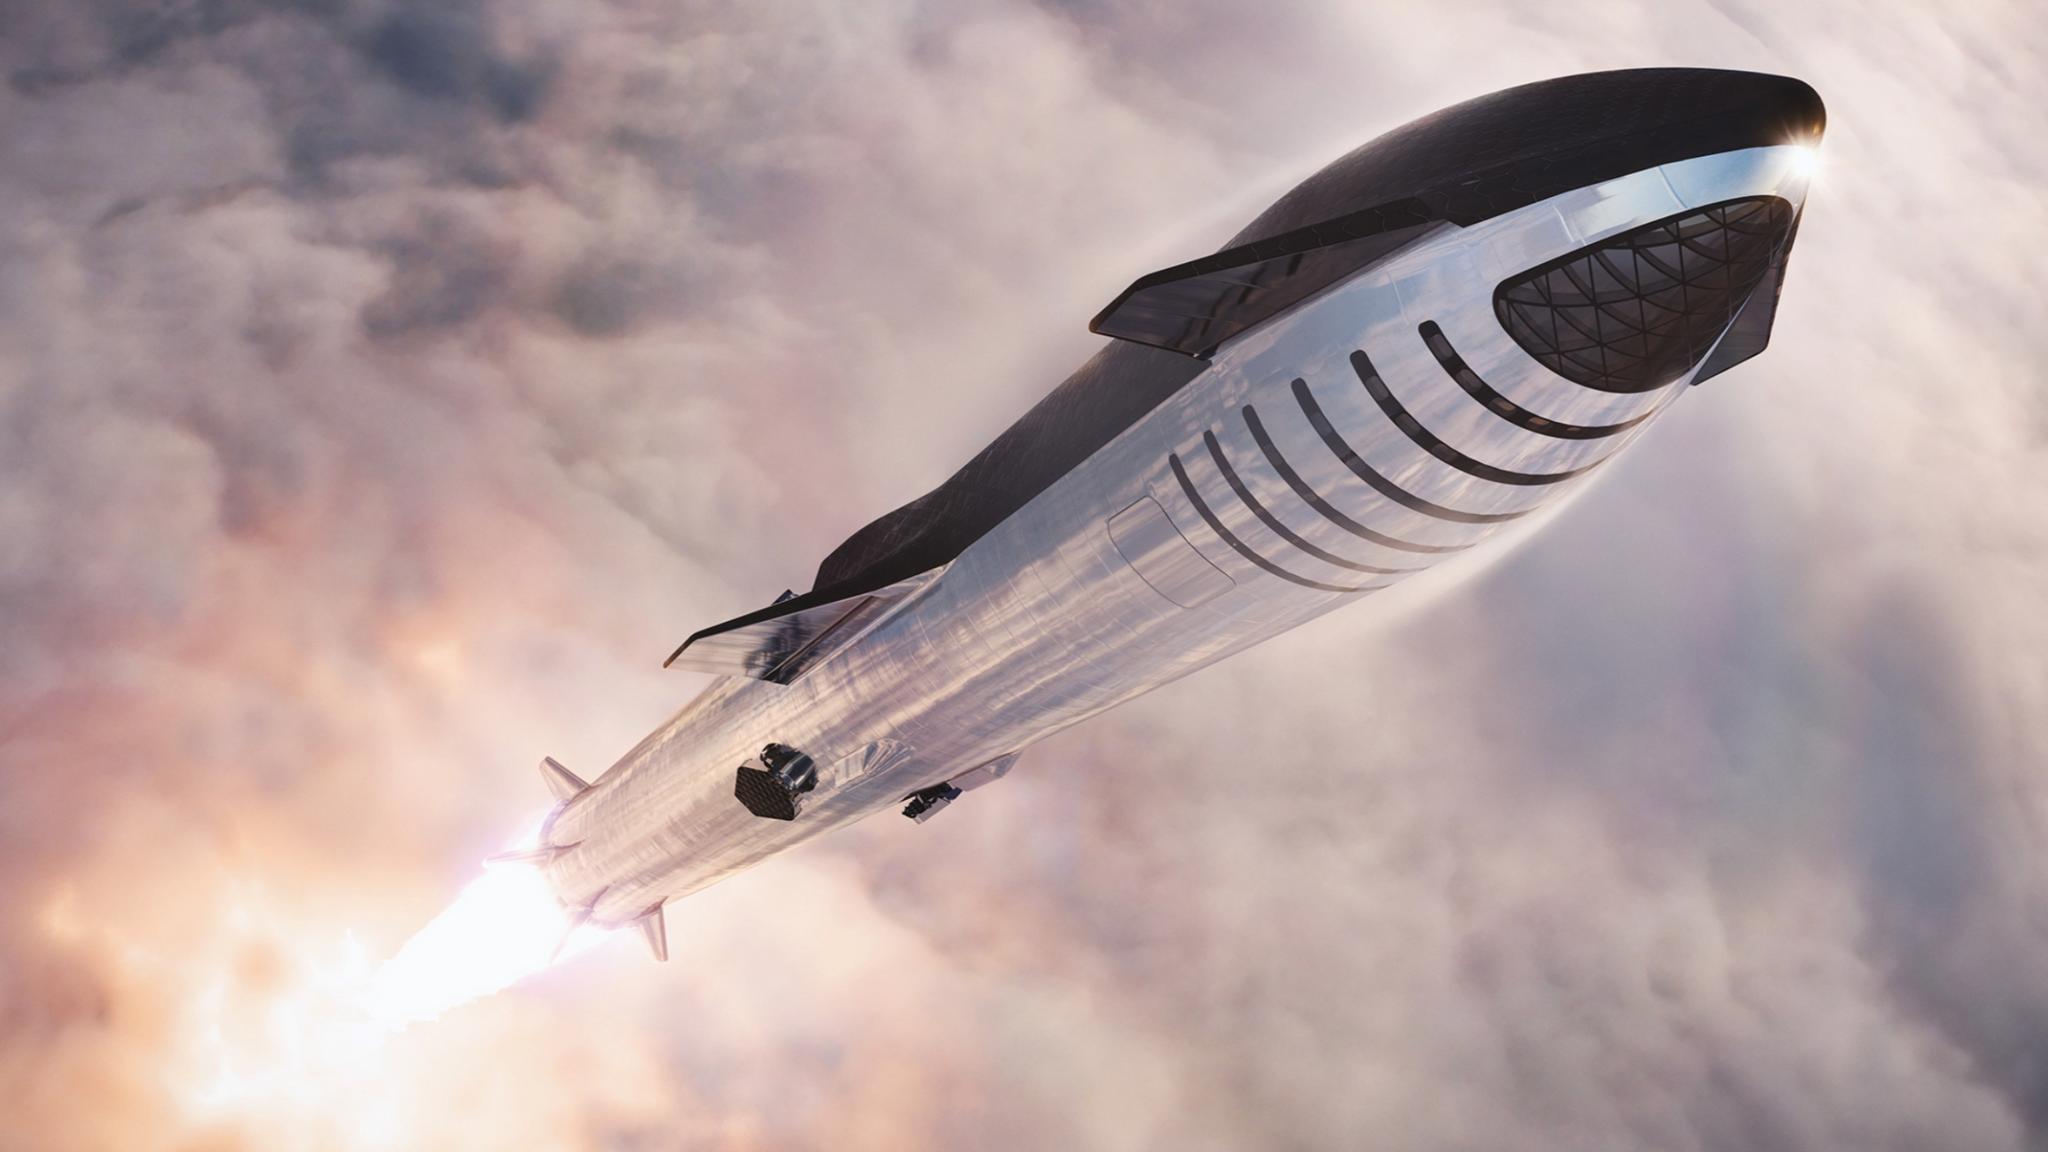  Nava spaţială fără echipaj Starship a SpaceX ar fi eşuat sâmbătă în spaţiu, la câteva minute de la decolare